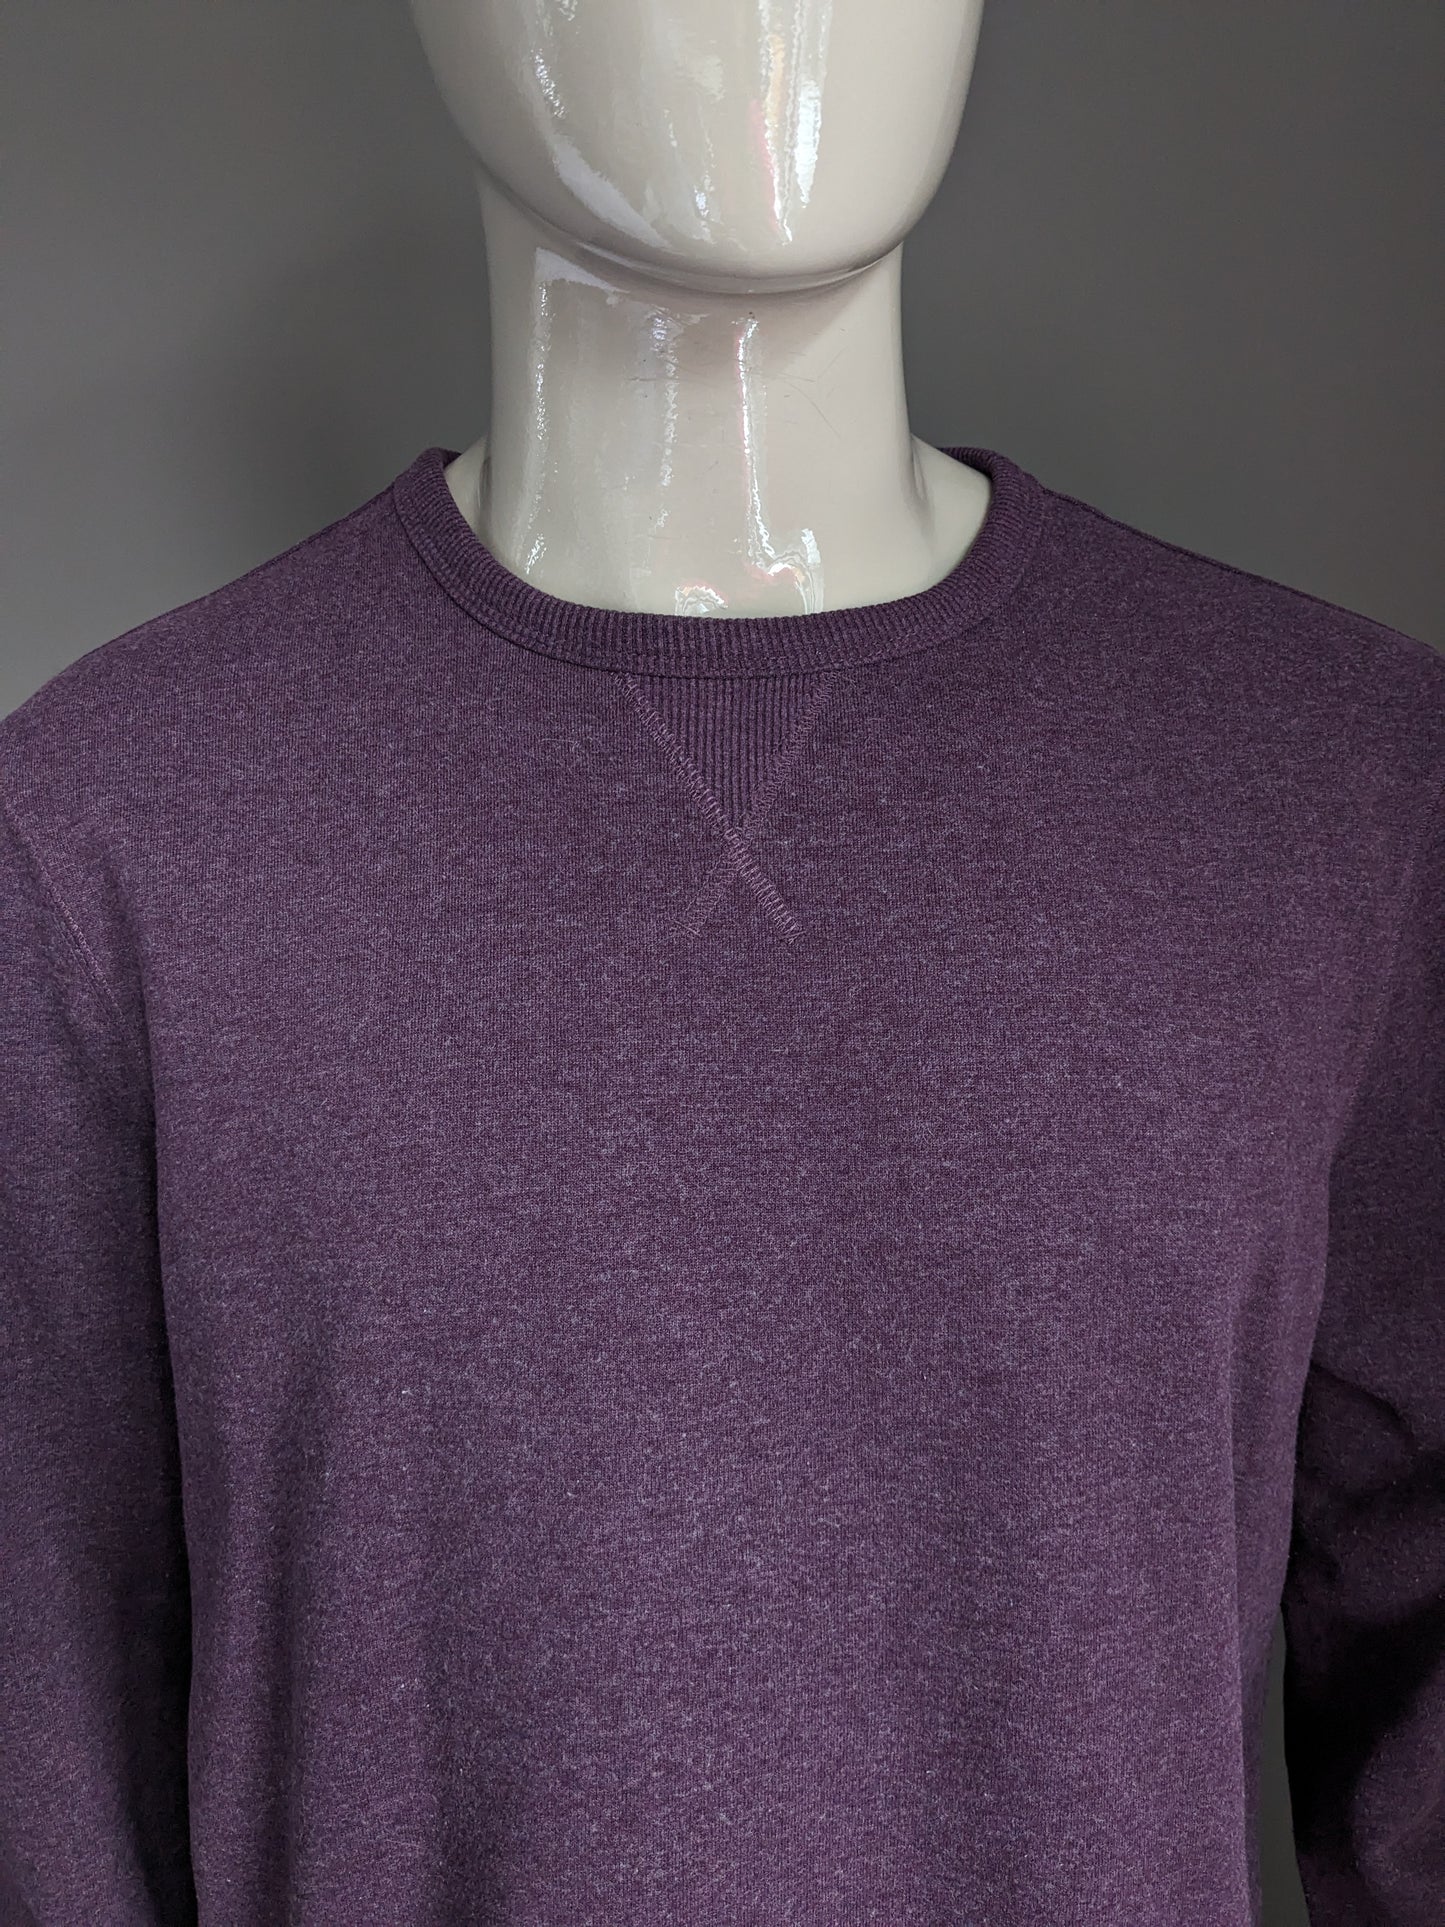 Pull de base de la collection M&S. Gris violet mélangé. Taille L. ajustement régulier.